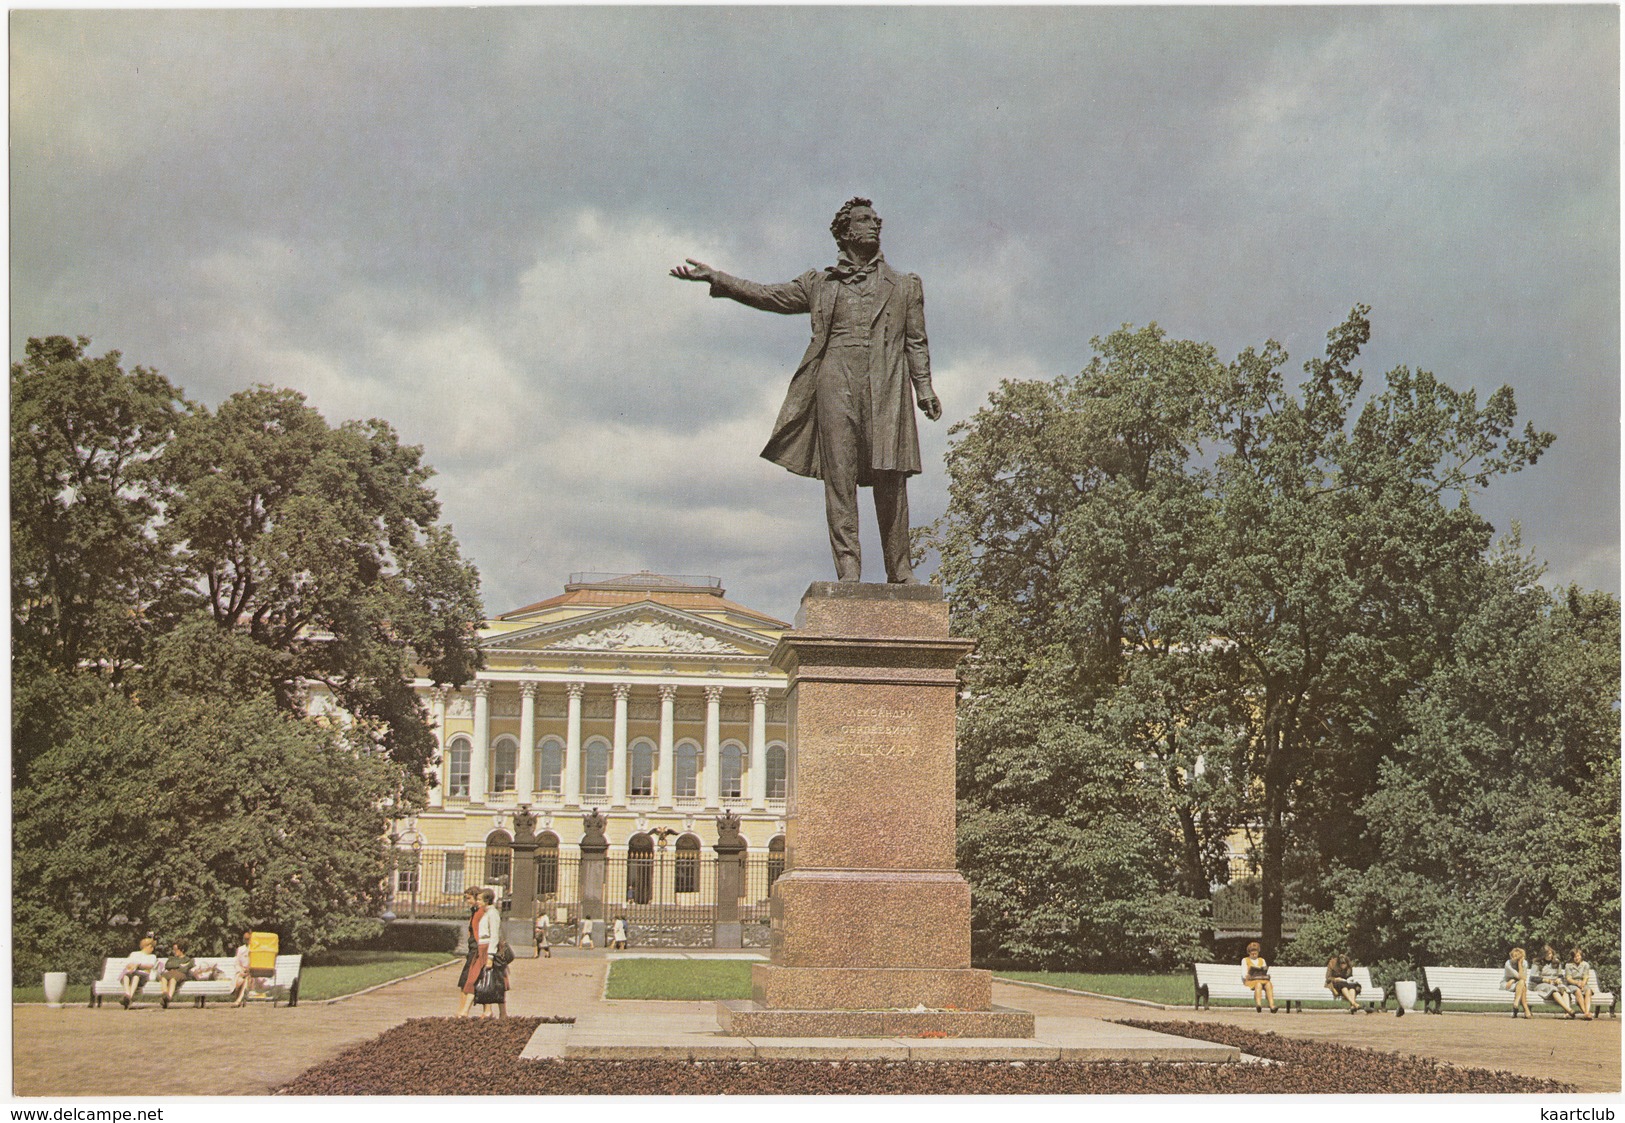 Leningrad: Monument à Pouchkine,Place Des Arts - Monument To Pushkin,Arts Square - (Jumbo Sized Postcard; 25 Cm X 17 Cm) - Russia